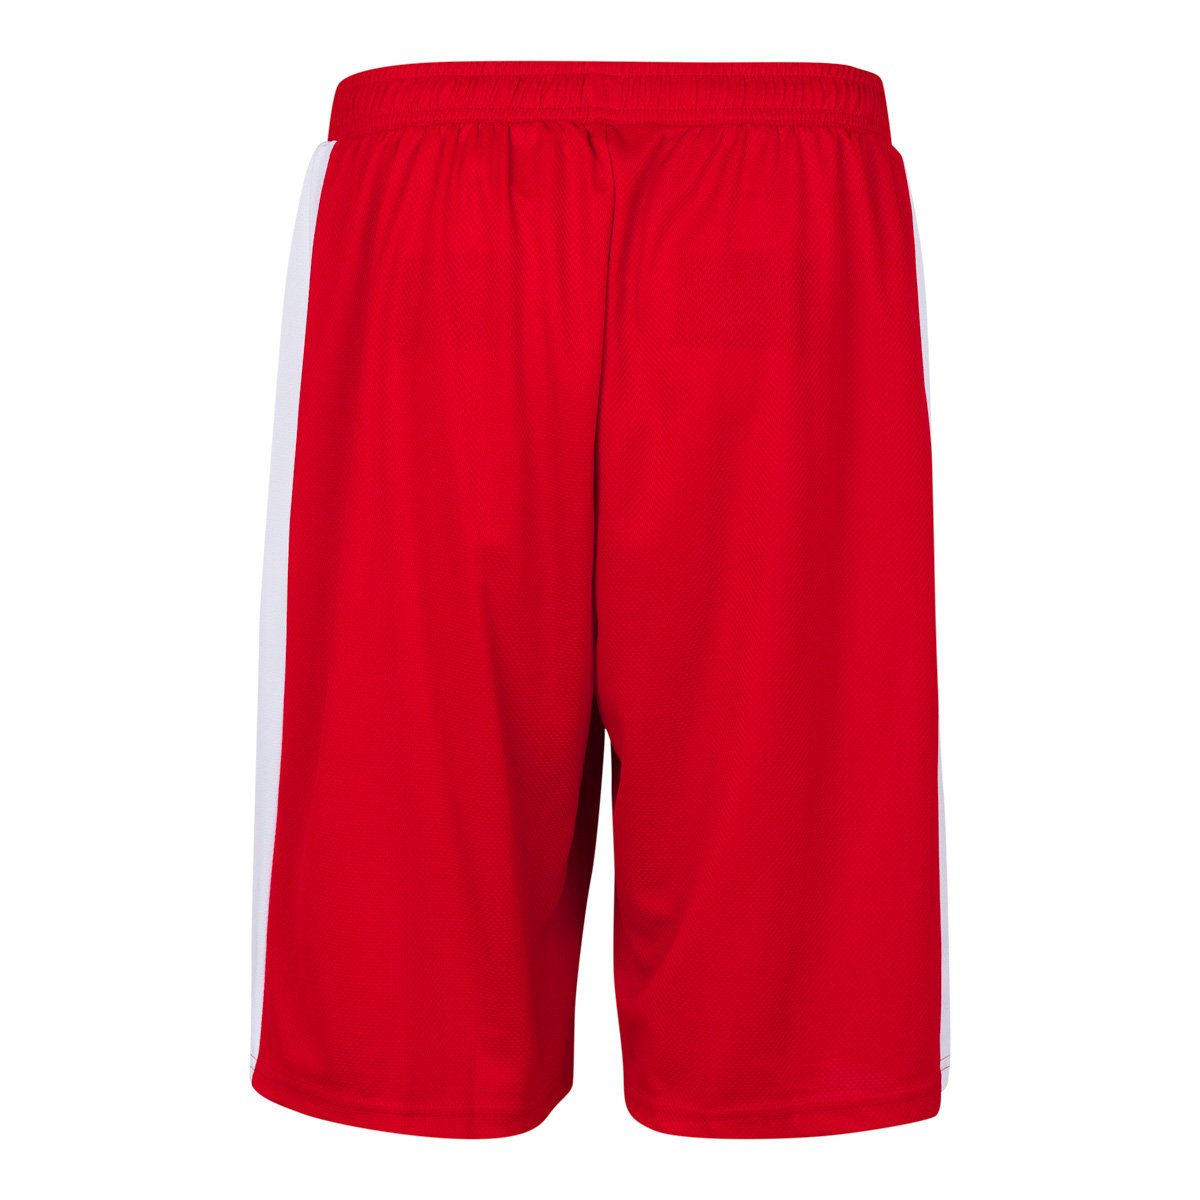 Pantalones cortes Basket Caluso Rojo Hombre - Imagen 2